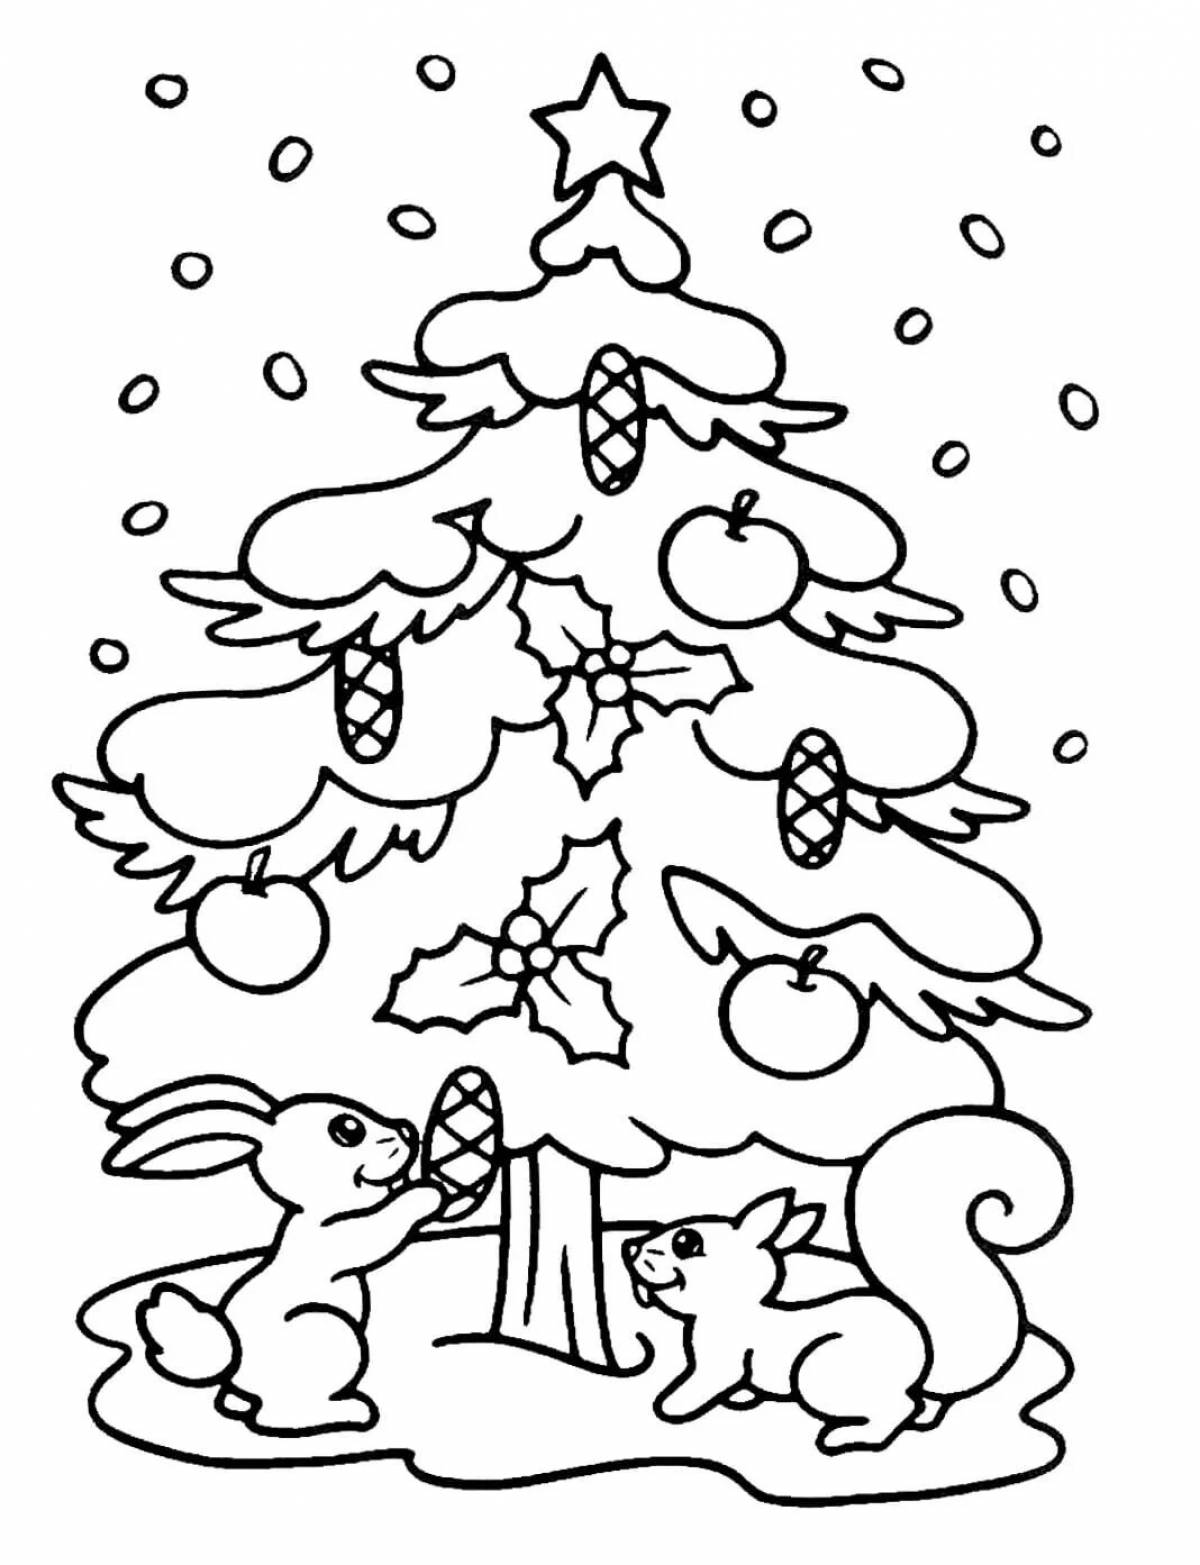 Причудливая раскраска рождественской елки для детей 3-4 лет